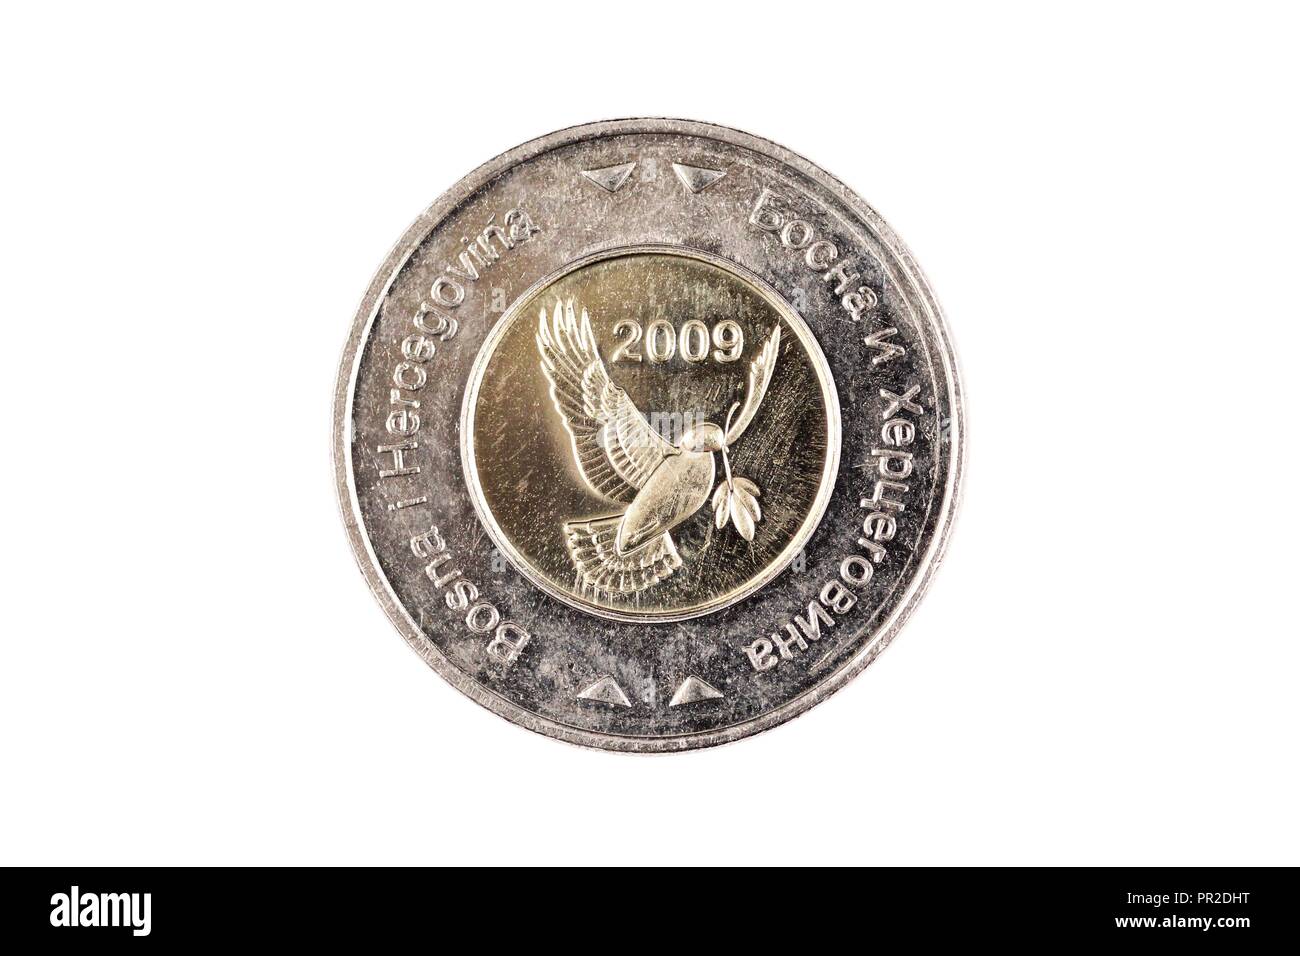 Ein Makro Bild eines Bosnischen 5 konvertible Mark Münze auf ...